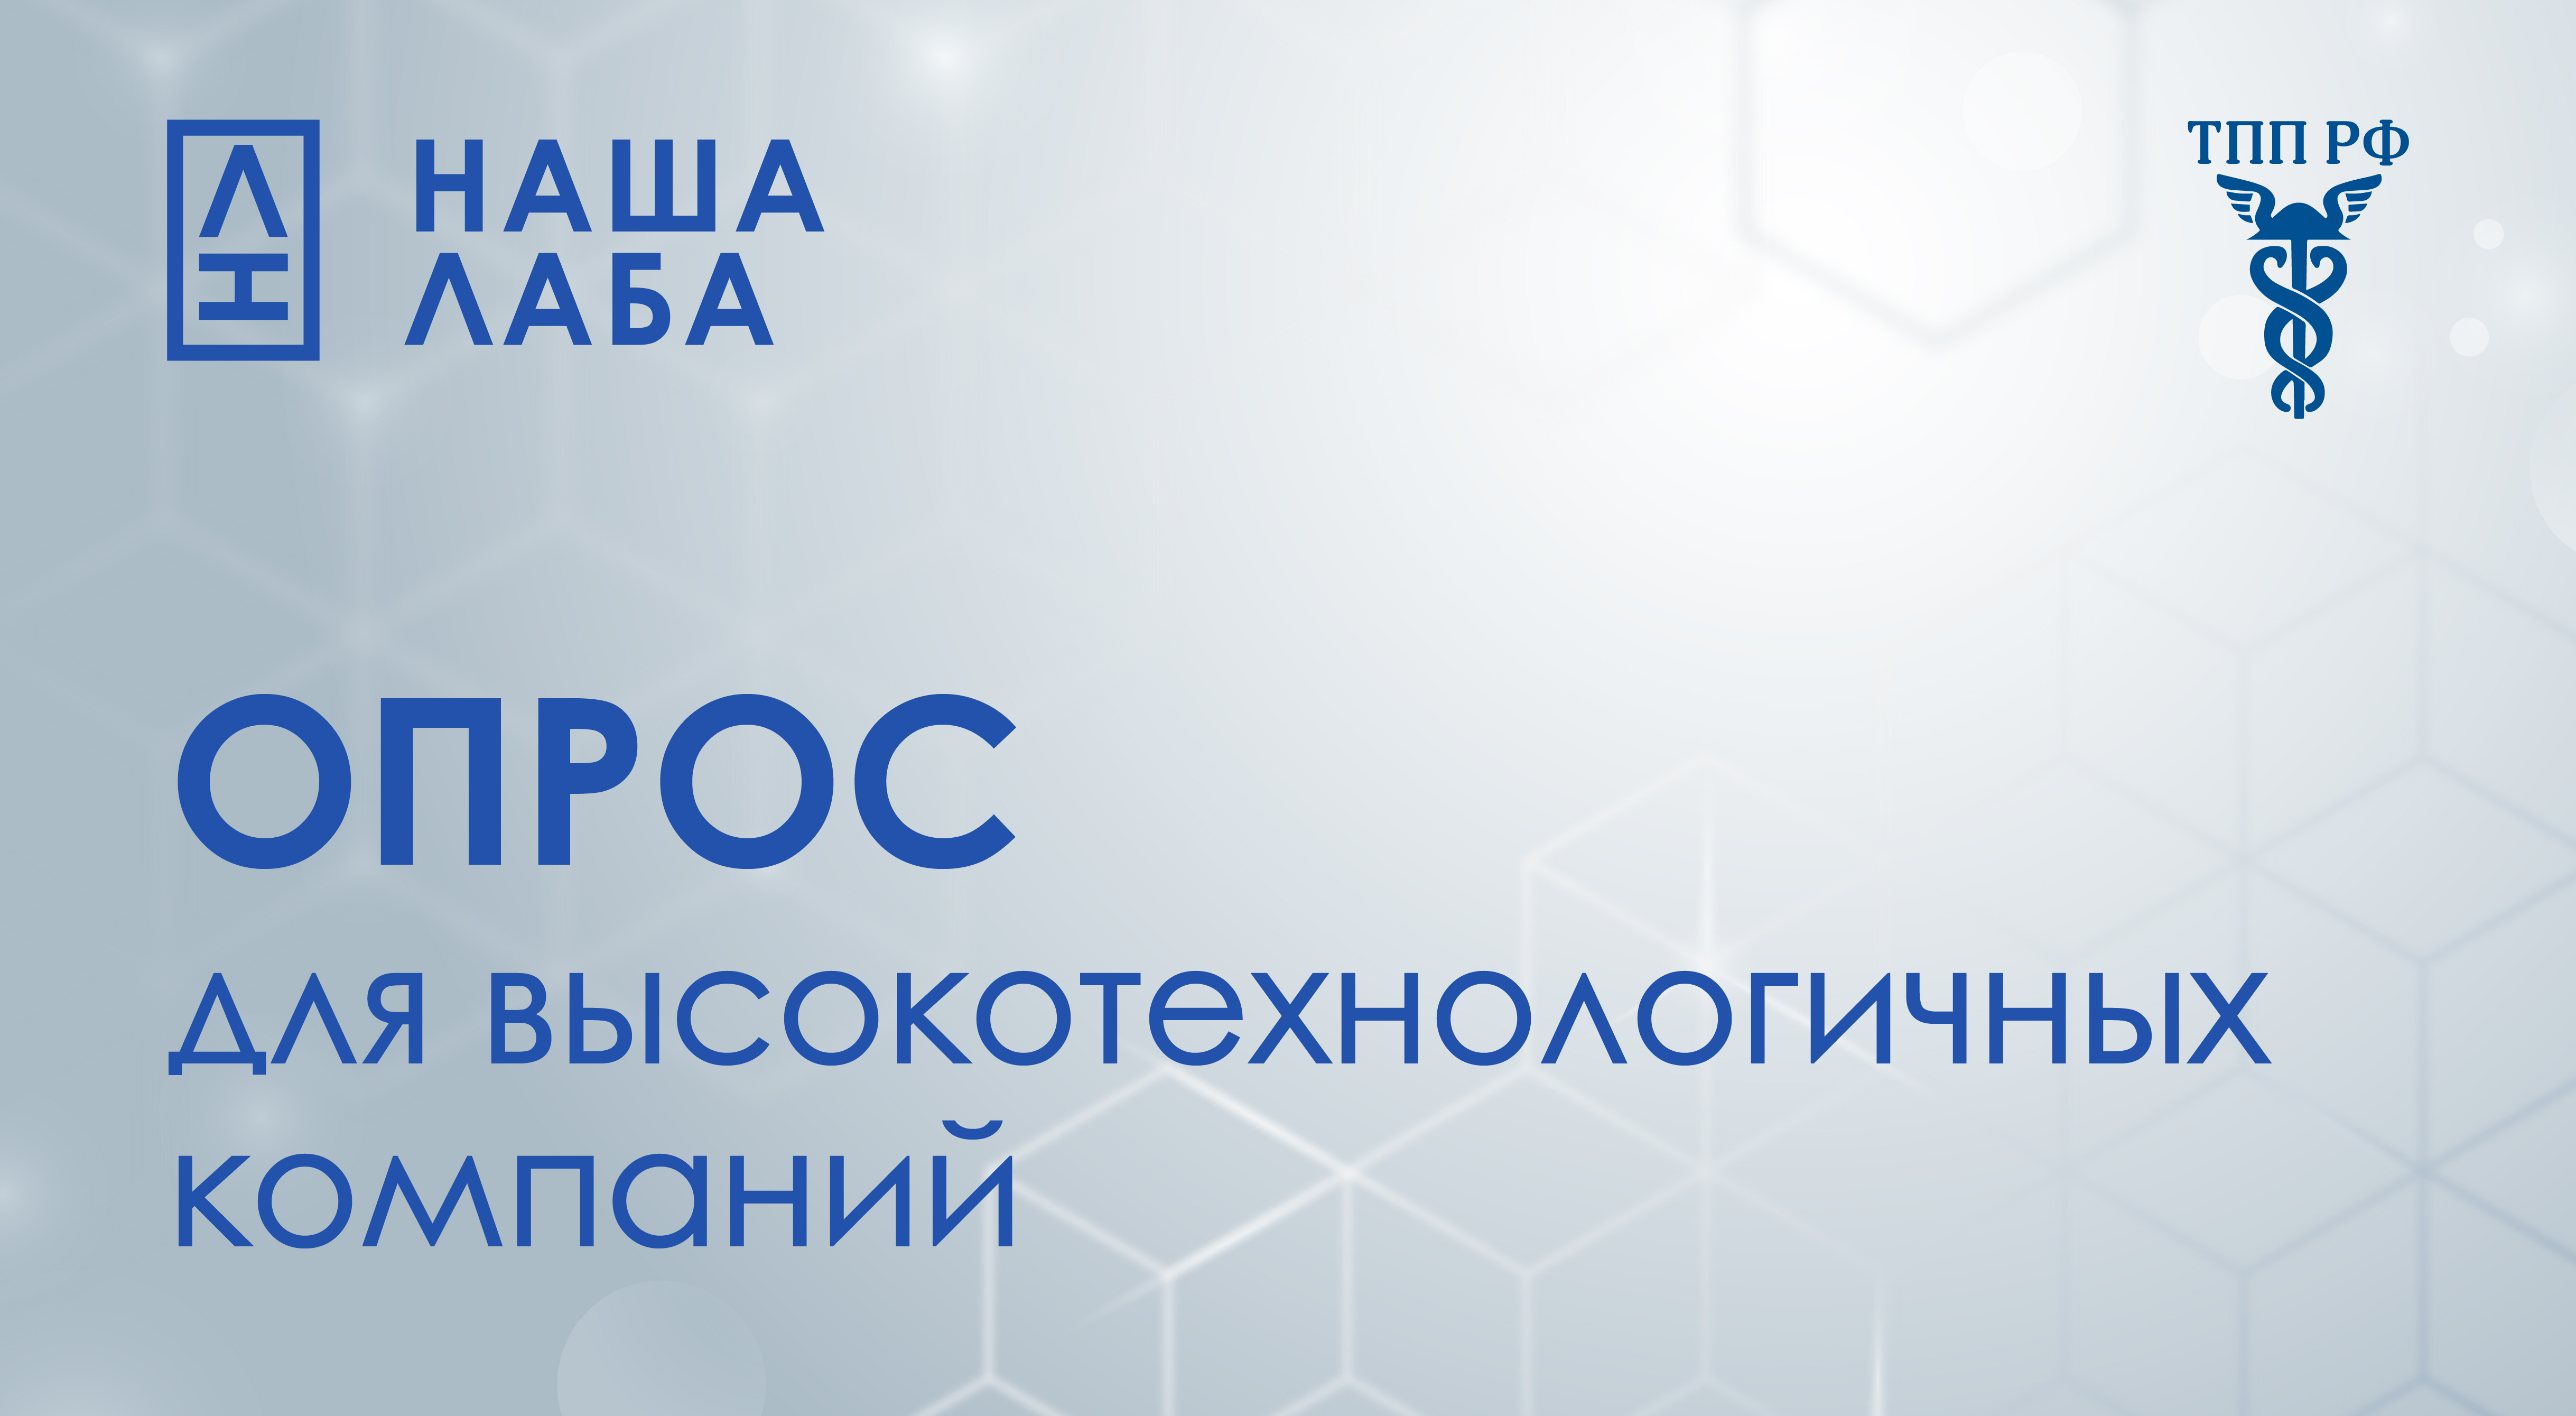 НАША ЛАБА совместно с ТПП РФ проводят опрос высокотехнологических компаний